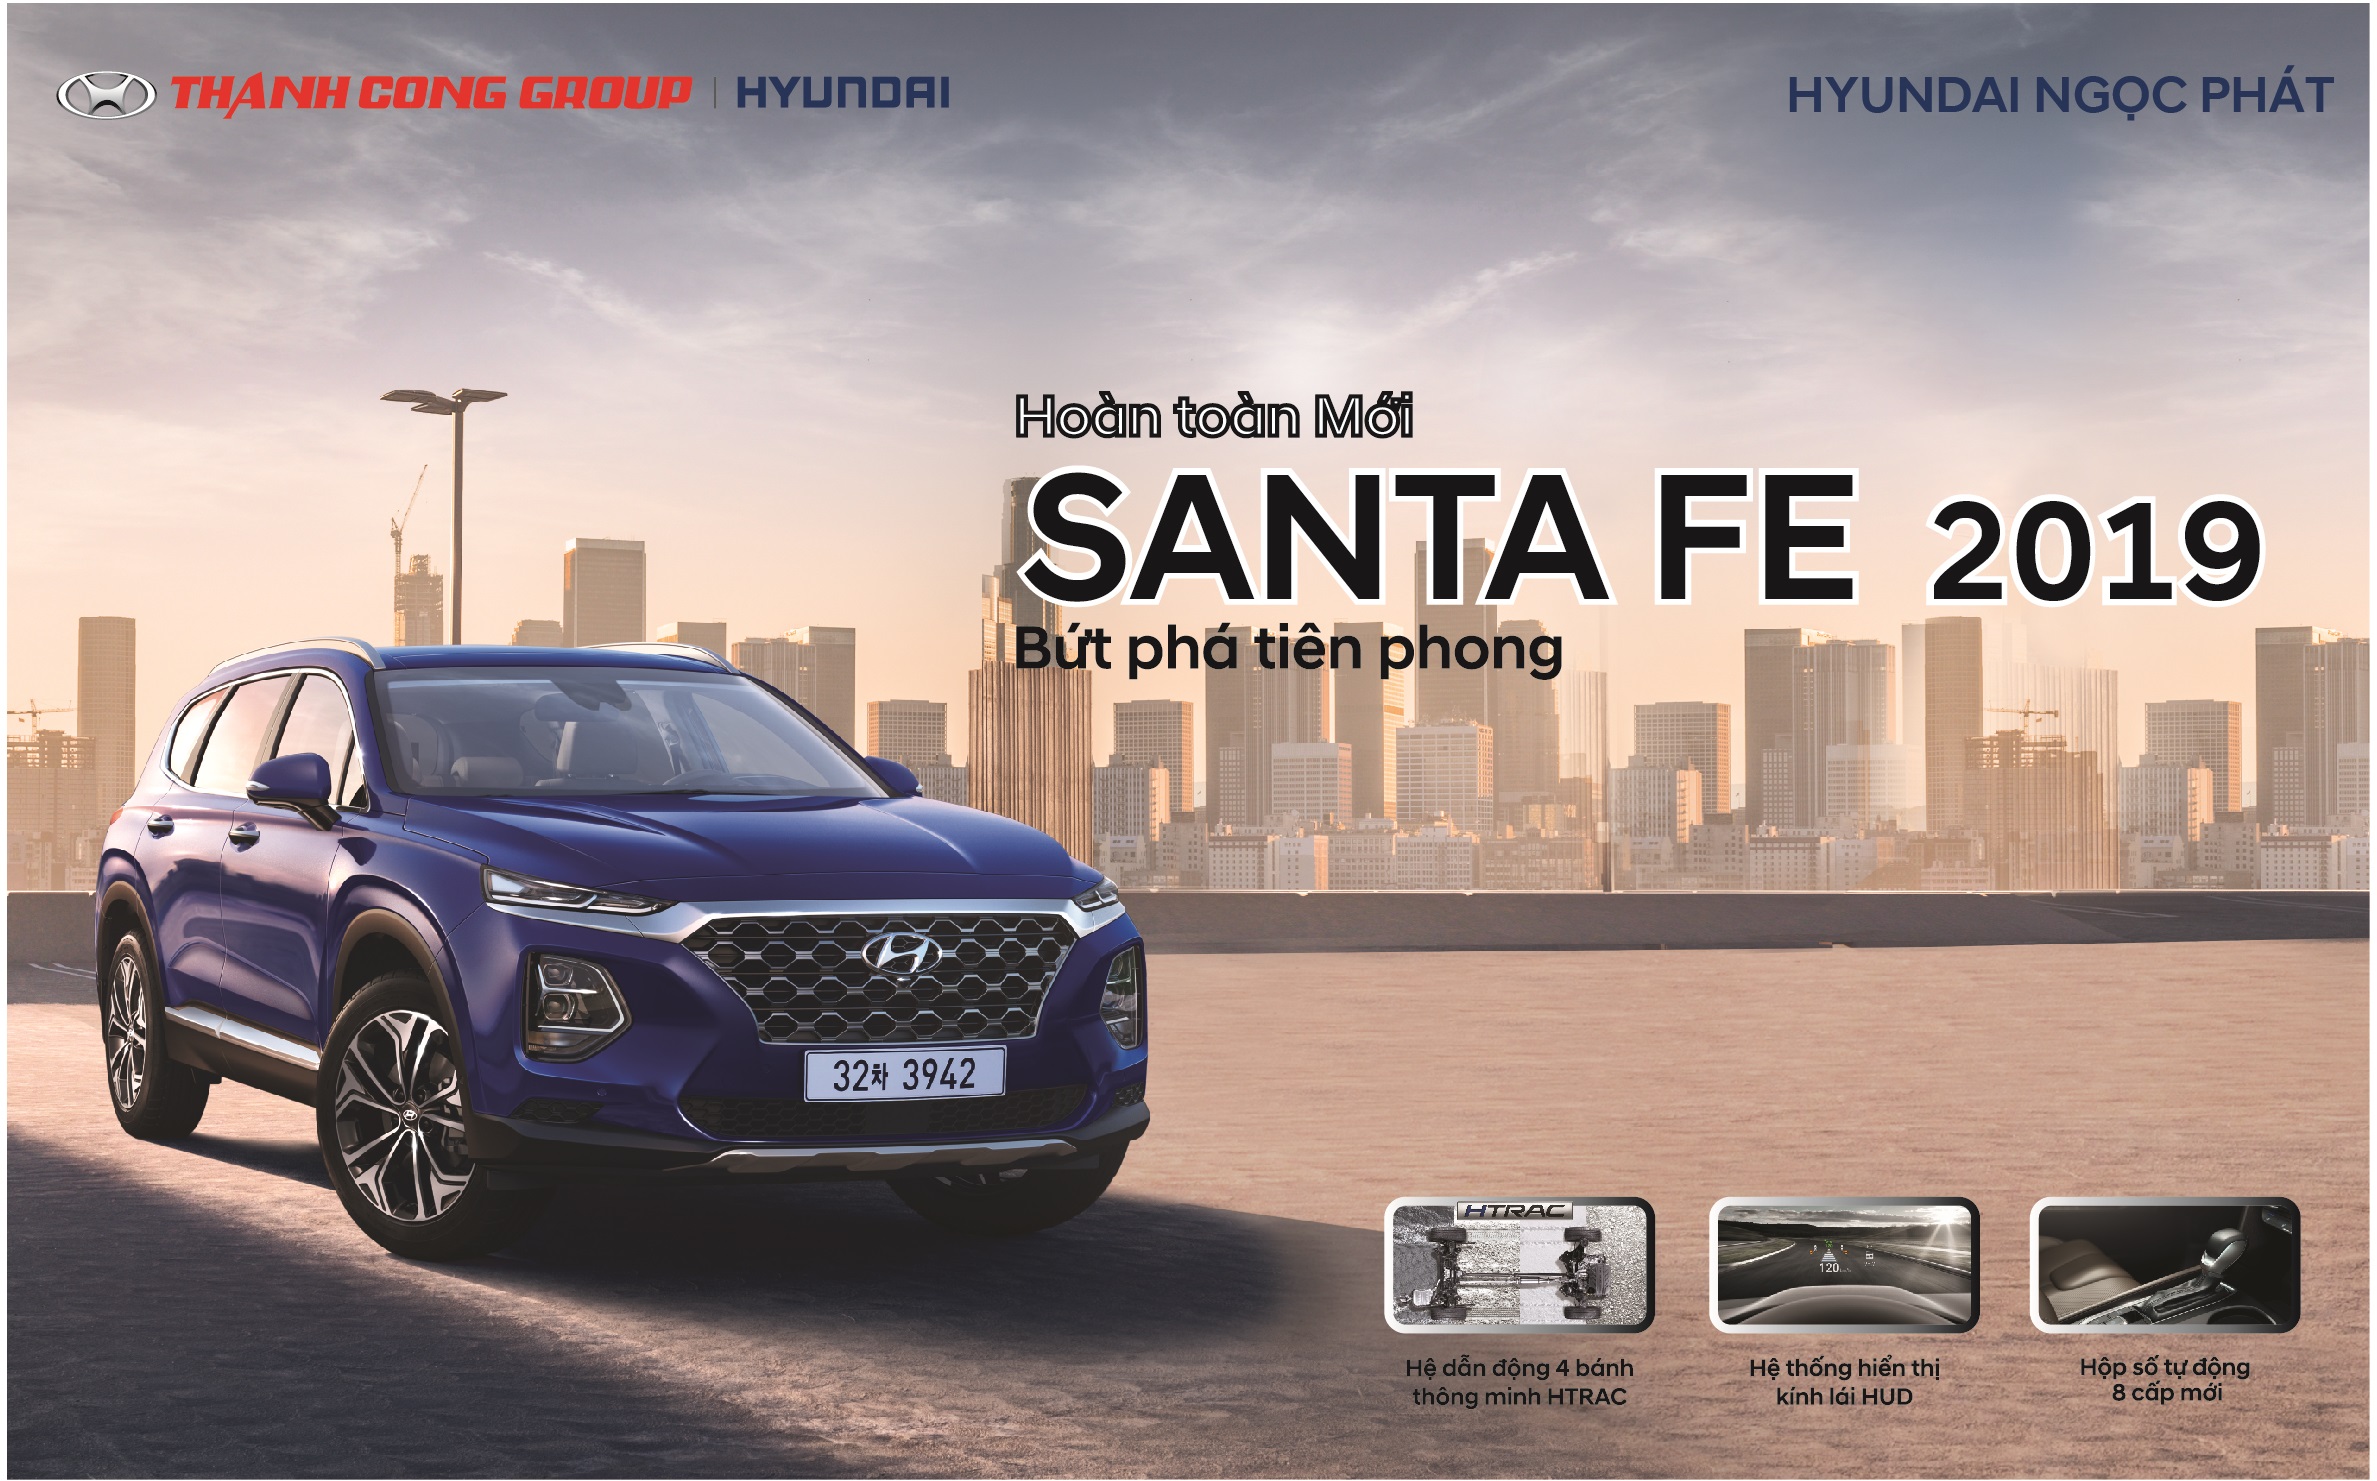 Chuỗi sự kiện trưng bày xe Hyundai Santafe 2019 hoàn toàn mới